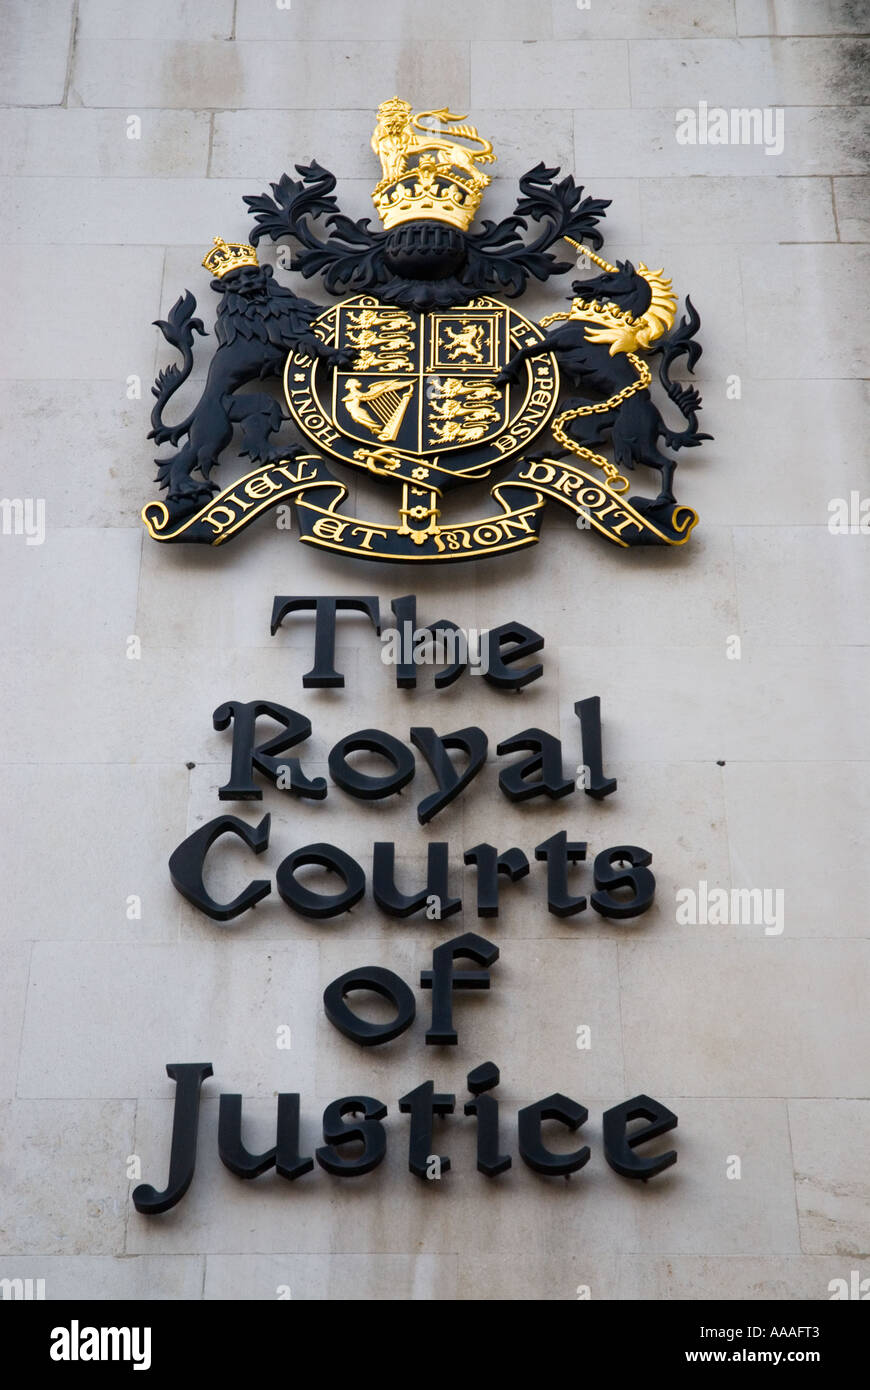 Las Cortes Reales de Justicia escudo en Londres Foto de stock